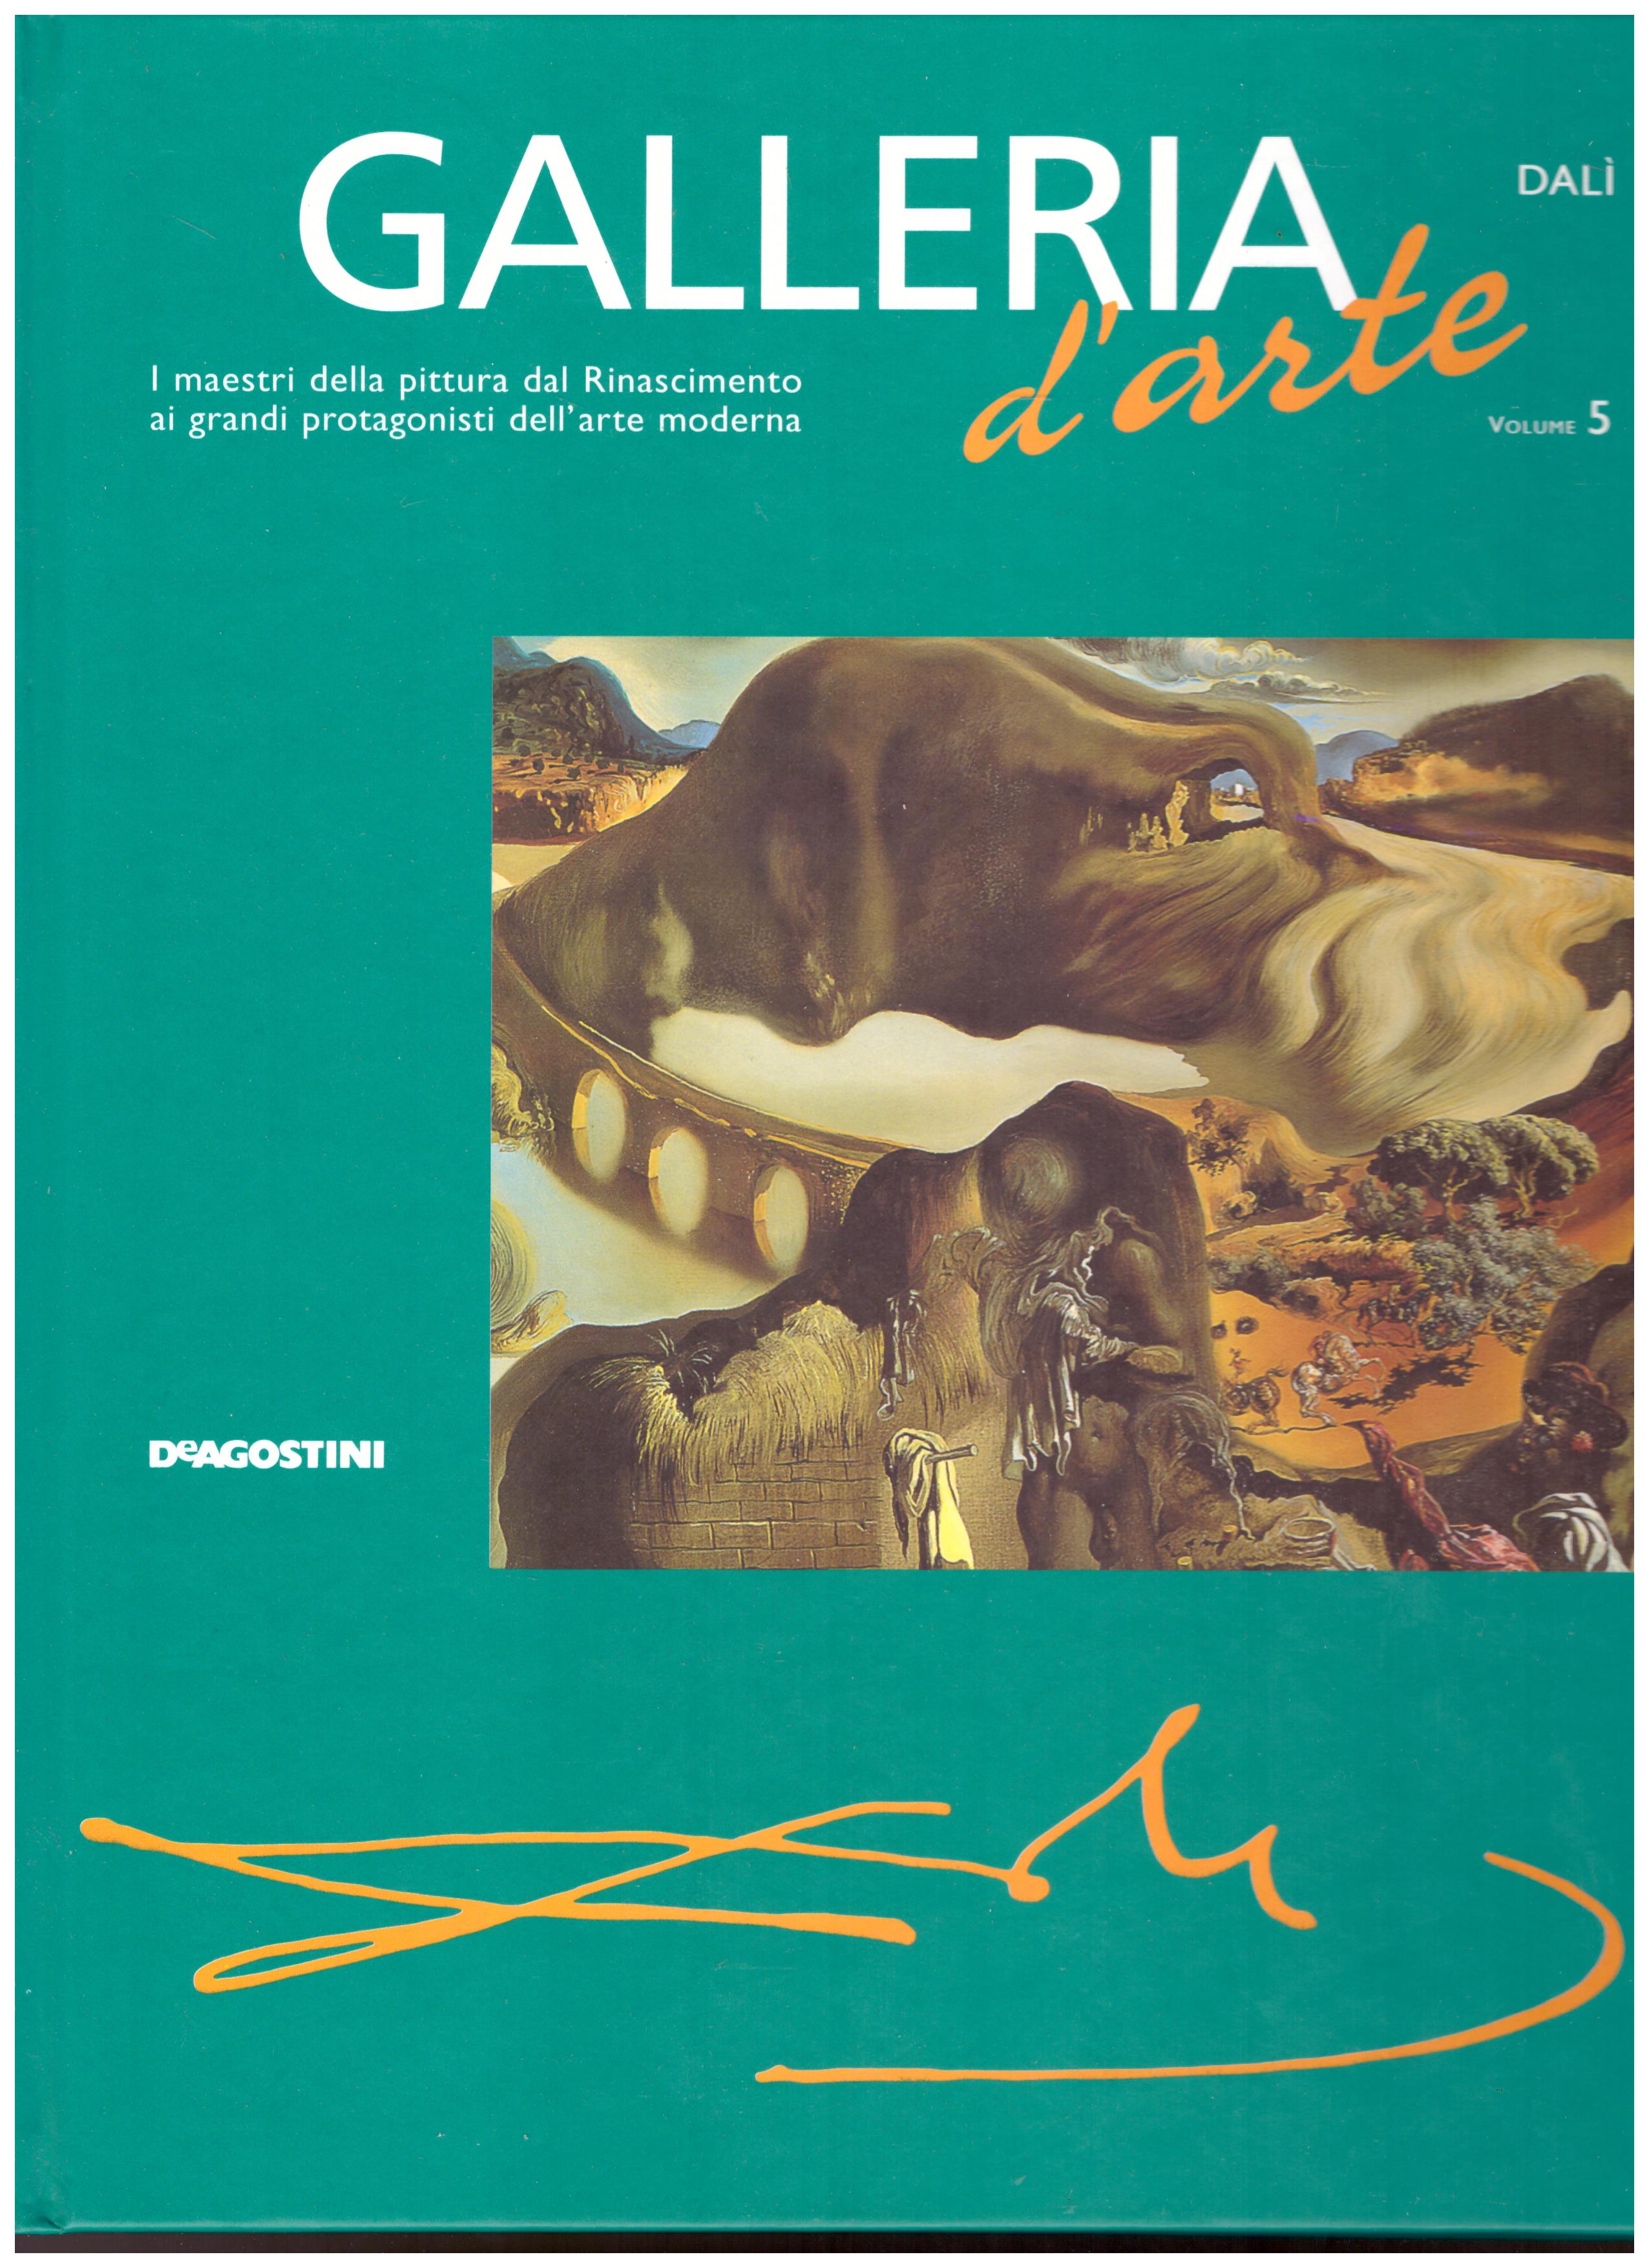 Titolo: Galleria d'arte, Dalì Autore: AA.VV.  Editore: DeAgostini, 2001